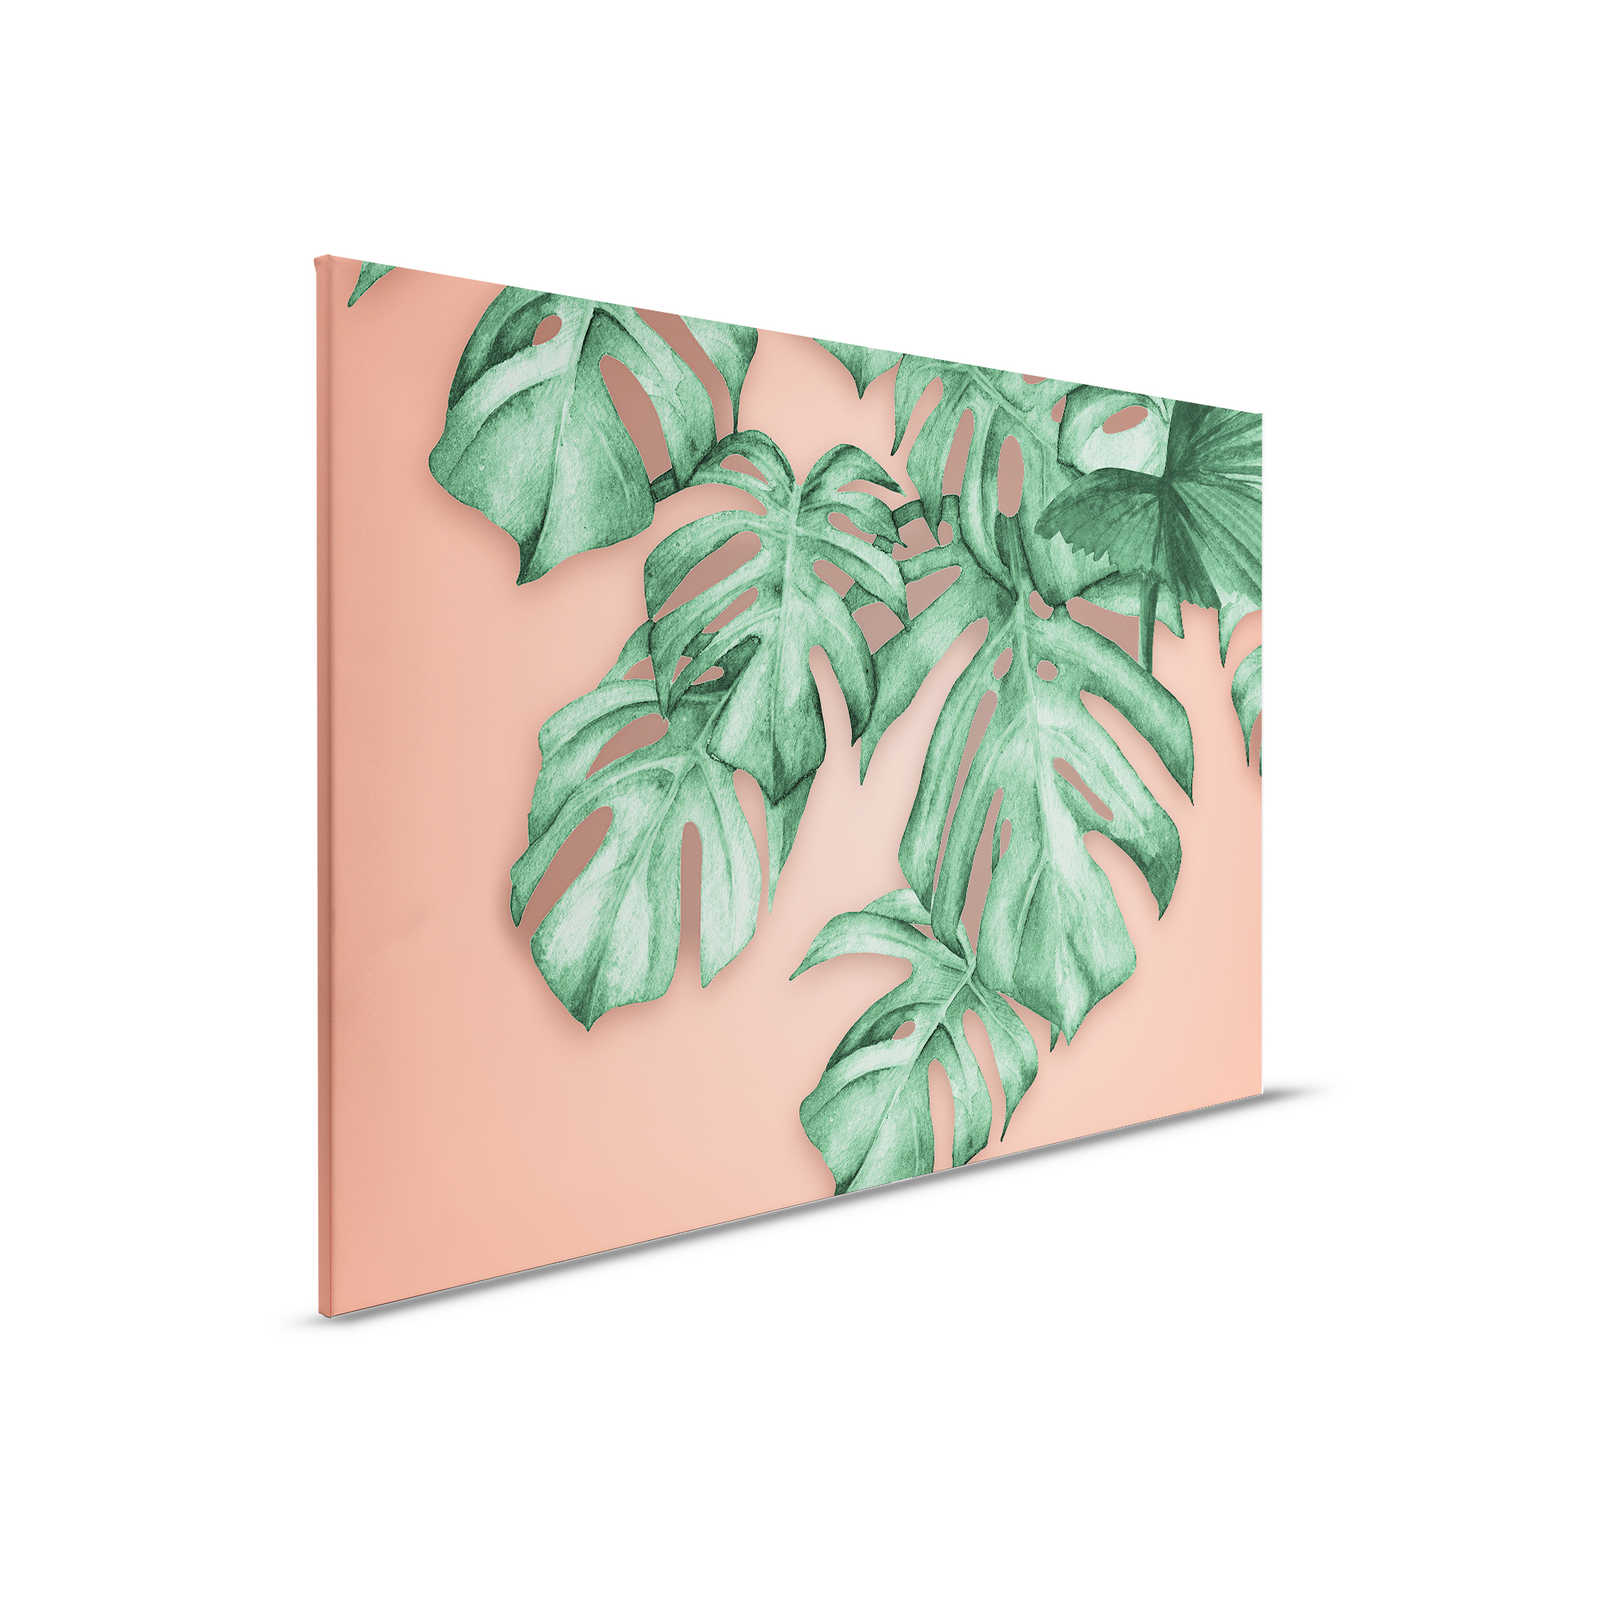 Cuadro en lienzo con hojas de palmera tropical - 0,90 m x 0,60 m
